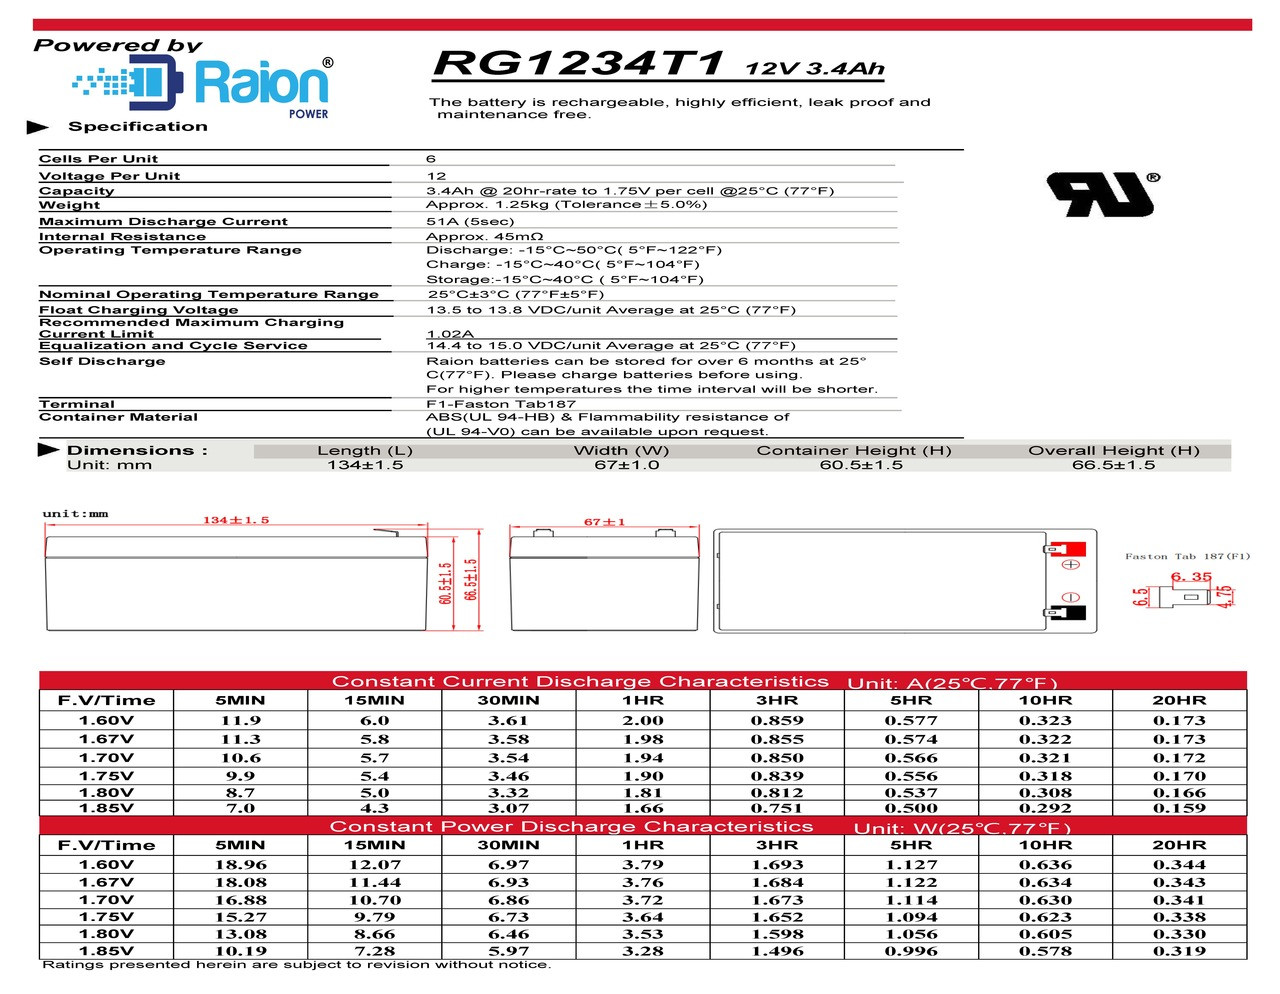 Raion Power RG1234T1 12V 3.4Ah Battery Data Sheet for Toro # 106-8397 Lawn Mower